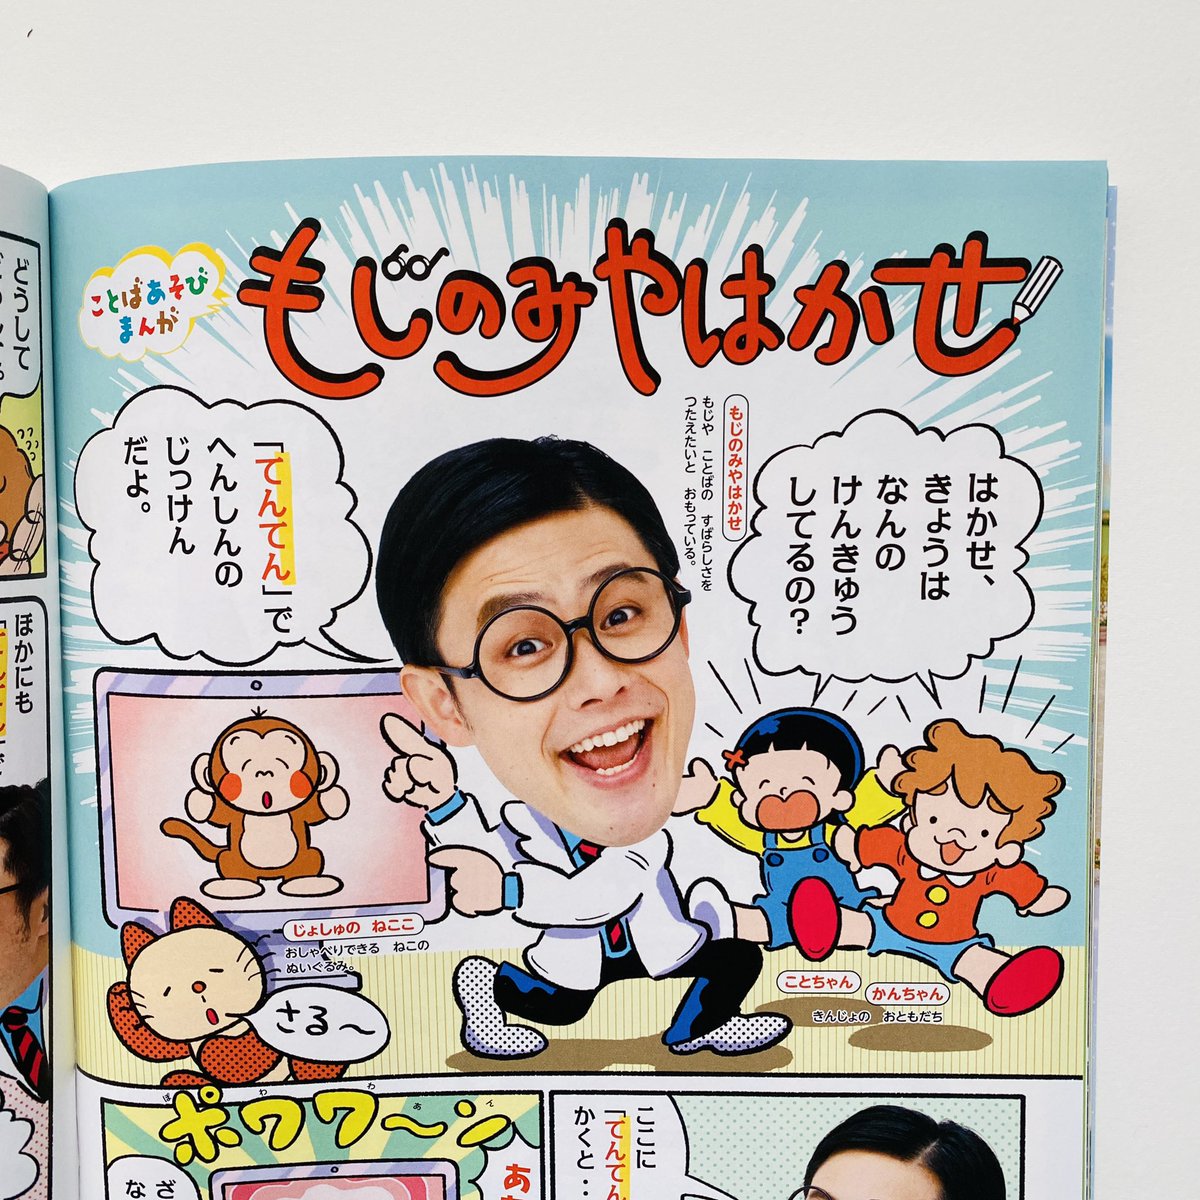 \🌸小学一年生5、6月合併号発売🌸/
小学一年生 @sho1hen で作画担当で連載中の「もじのみやはかせ」 @shinomiyaakira 
今月は「てんてん」で実験!うまく変身させれるかな〜?🐵 